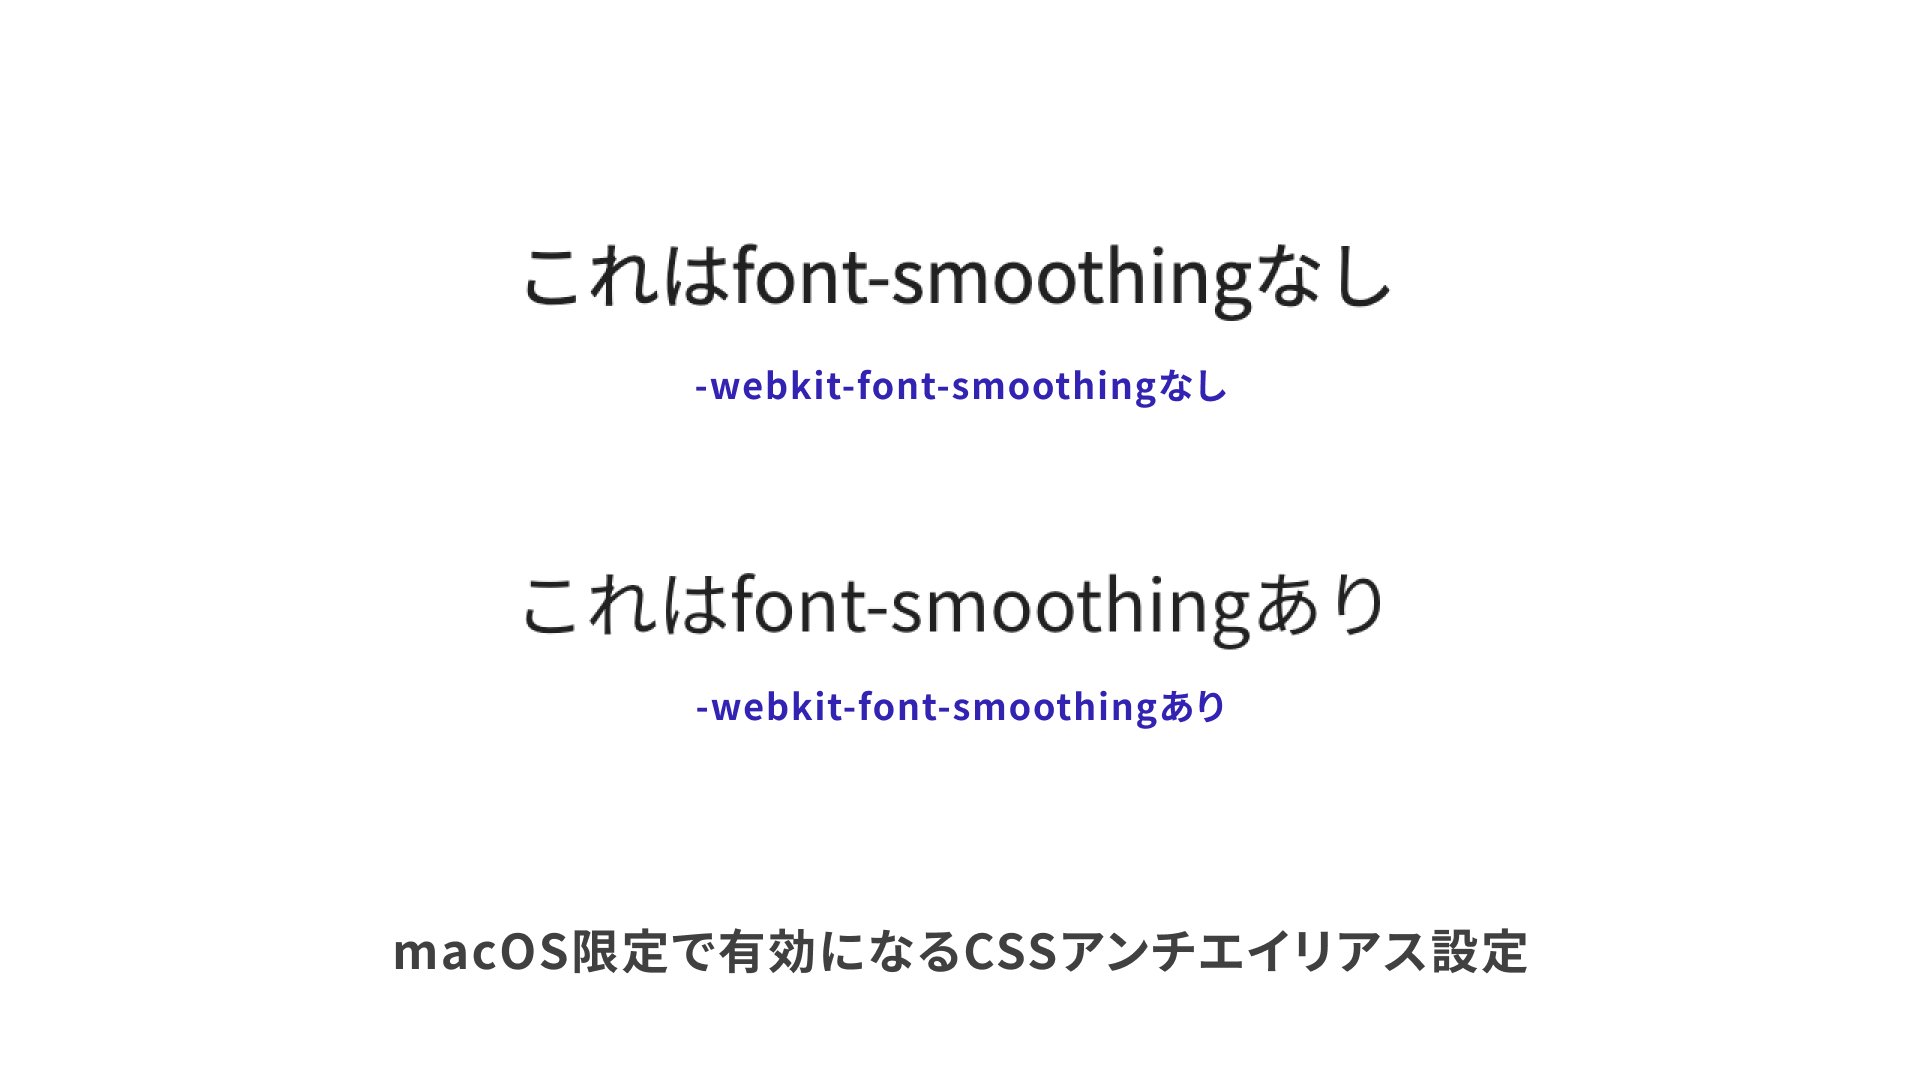 CSSのアンチエイリアスのありなしでも見え方が違う。-webkit-font-smoothing: antialiasedのある方が少し太く見える